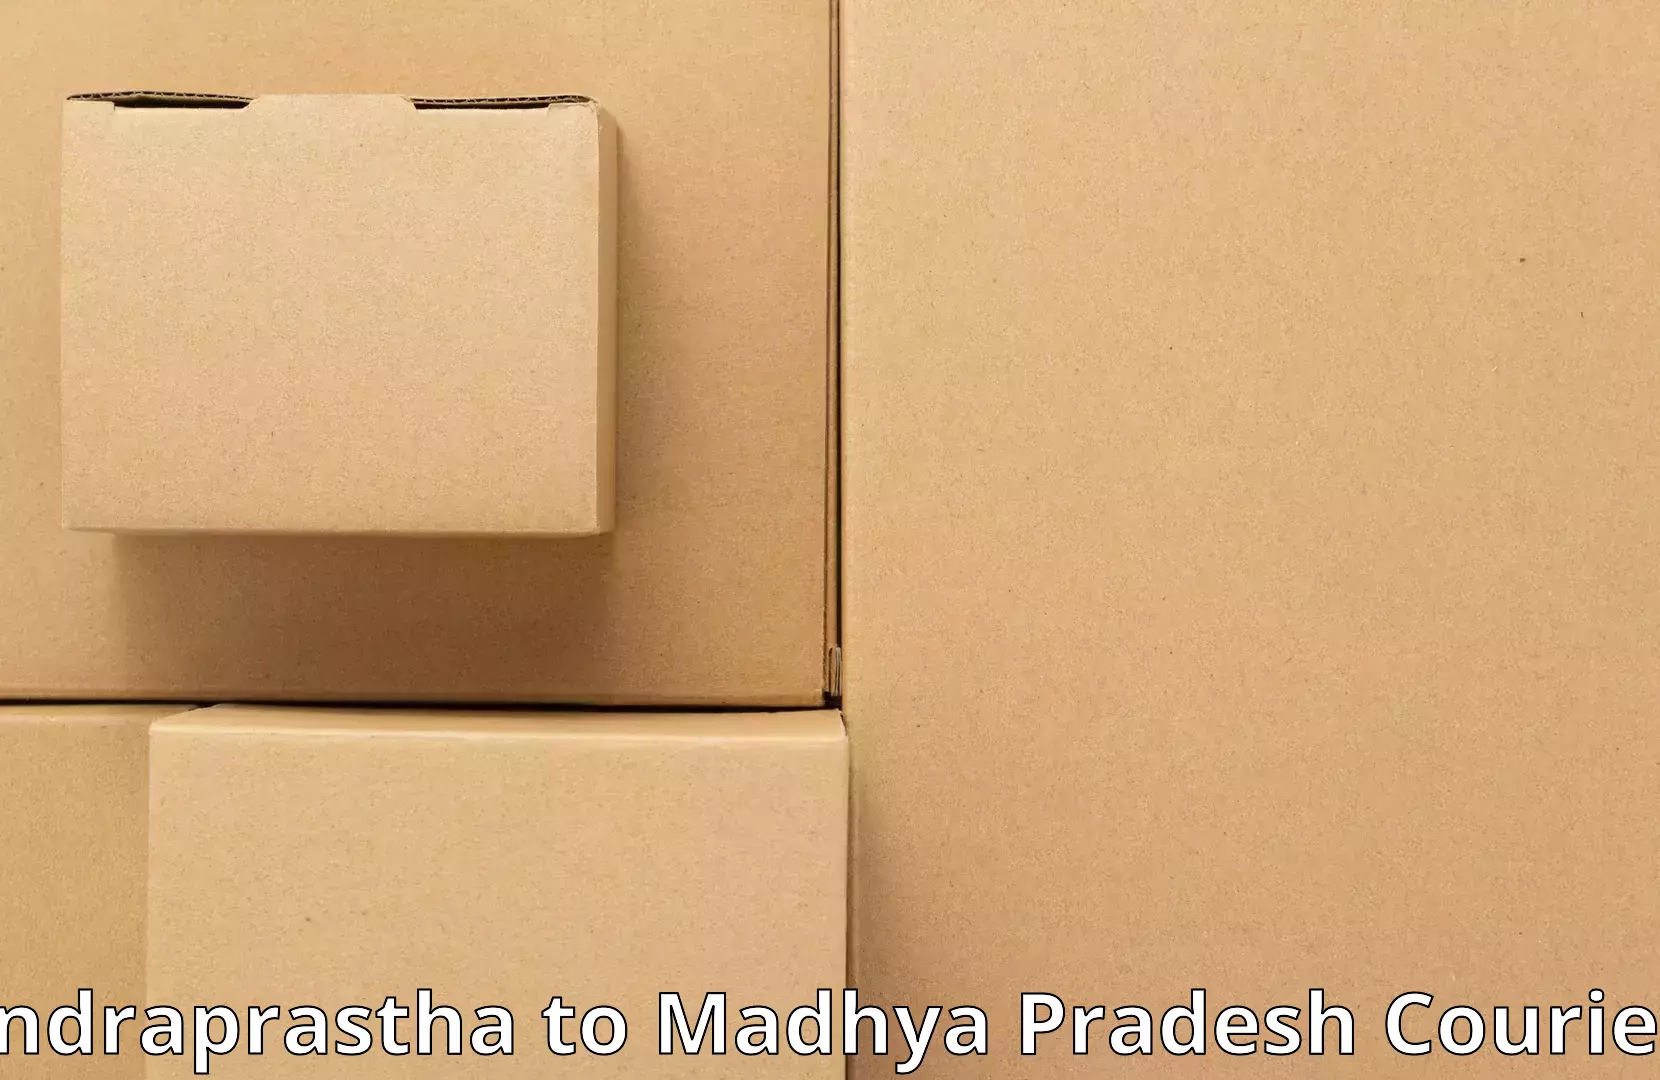 Furniture delivery service Indraprastha to Khirkiya